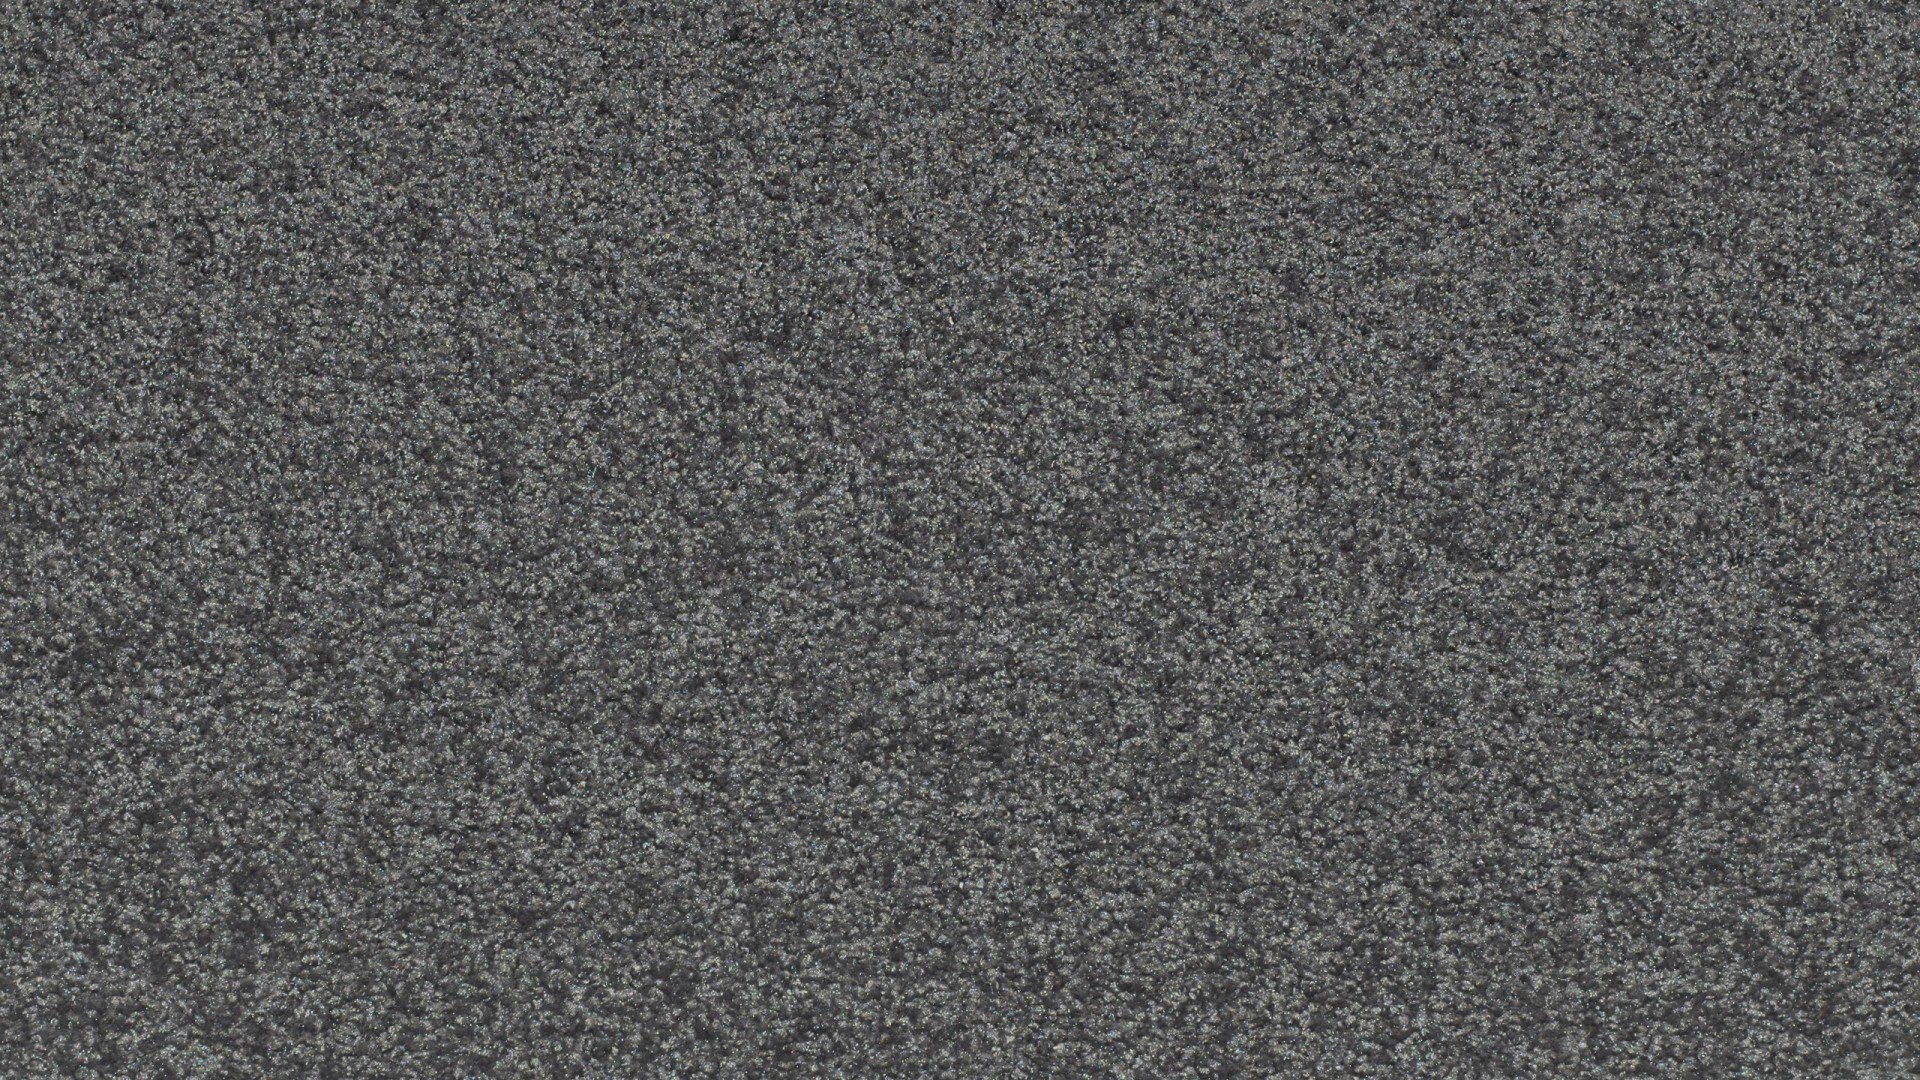 volkswagen wallpaper,black,grey,asphalt,pattern,flooring